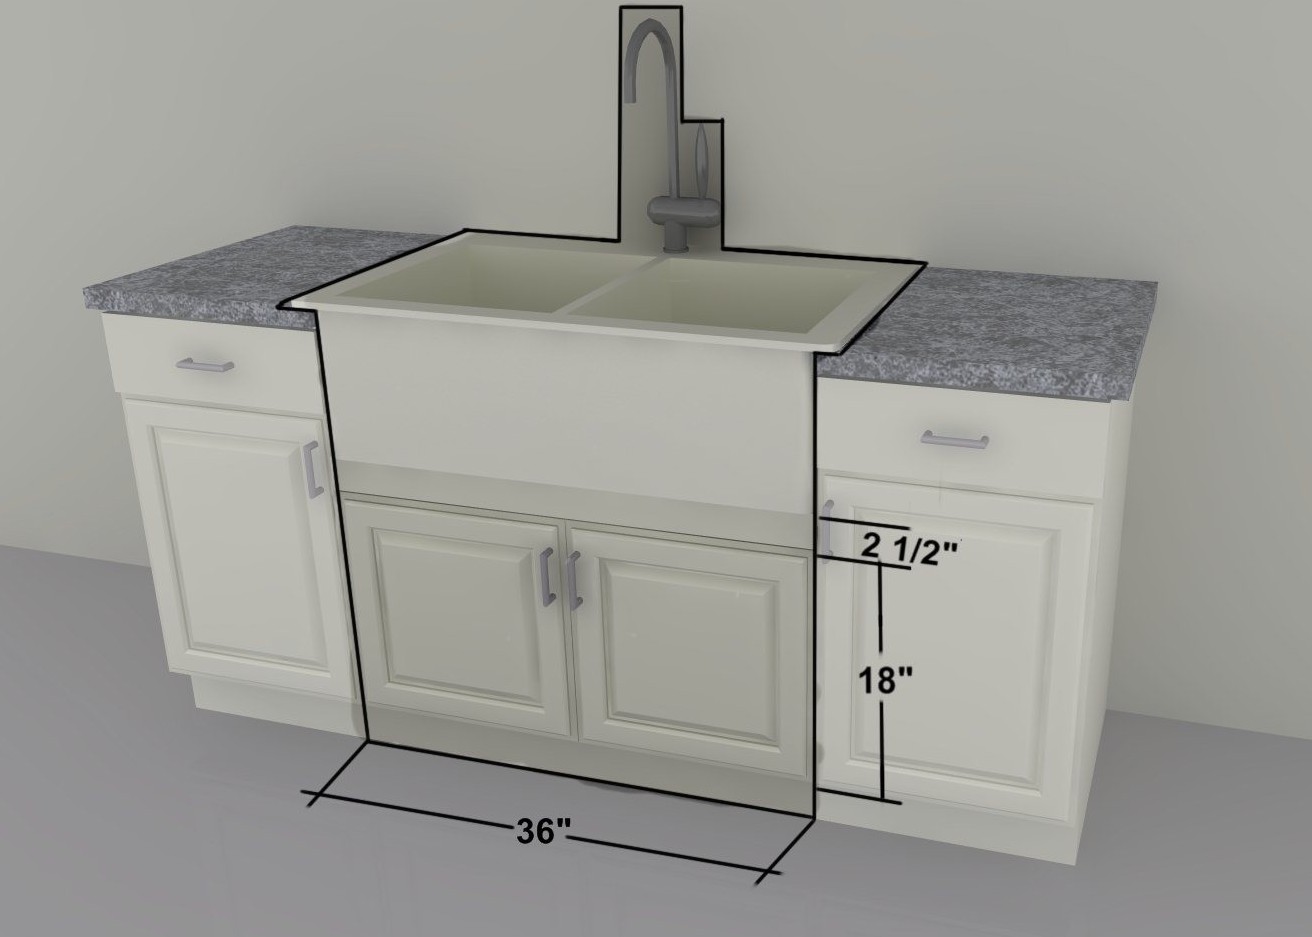 kitchen sink basin cabinet